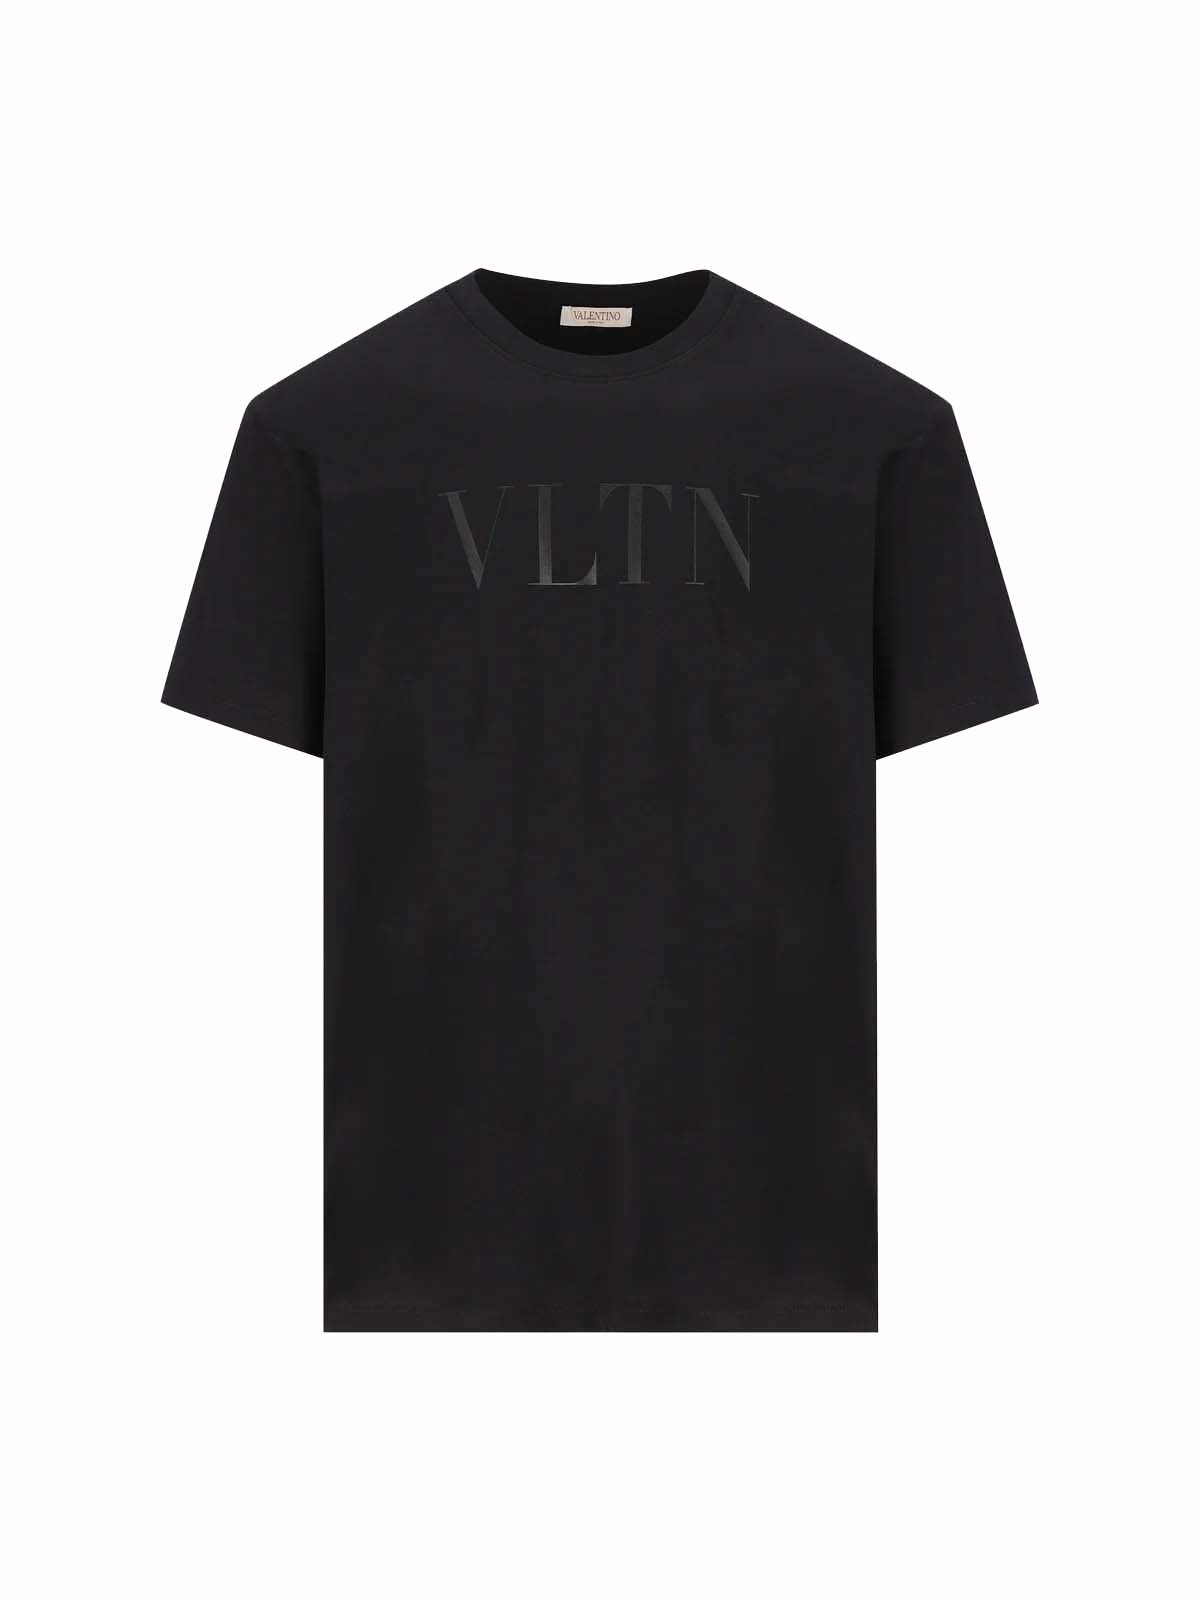 VLTN Times printed shirt